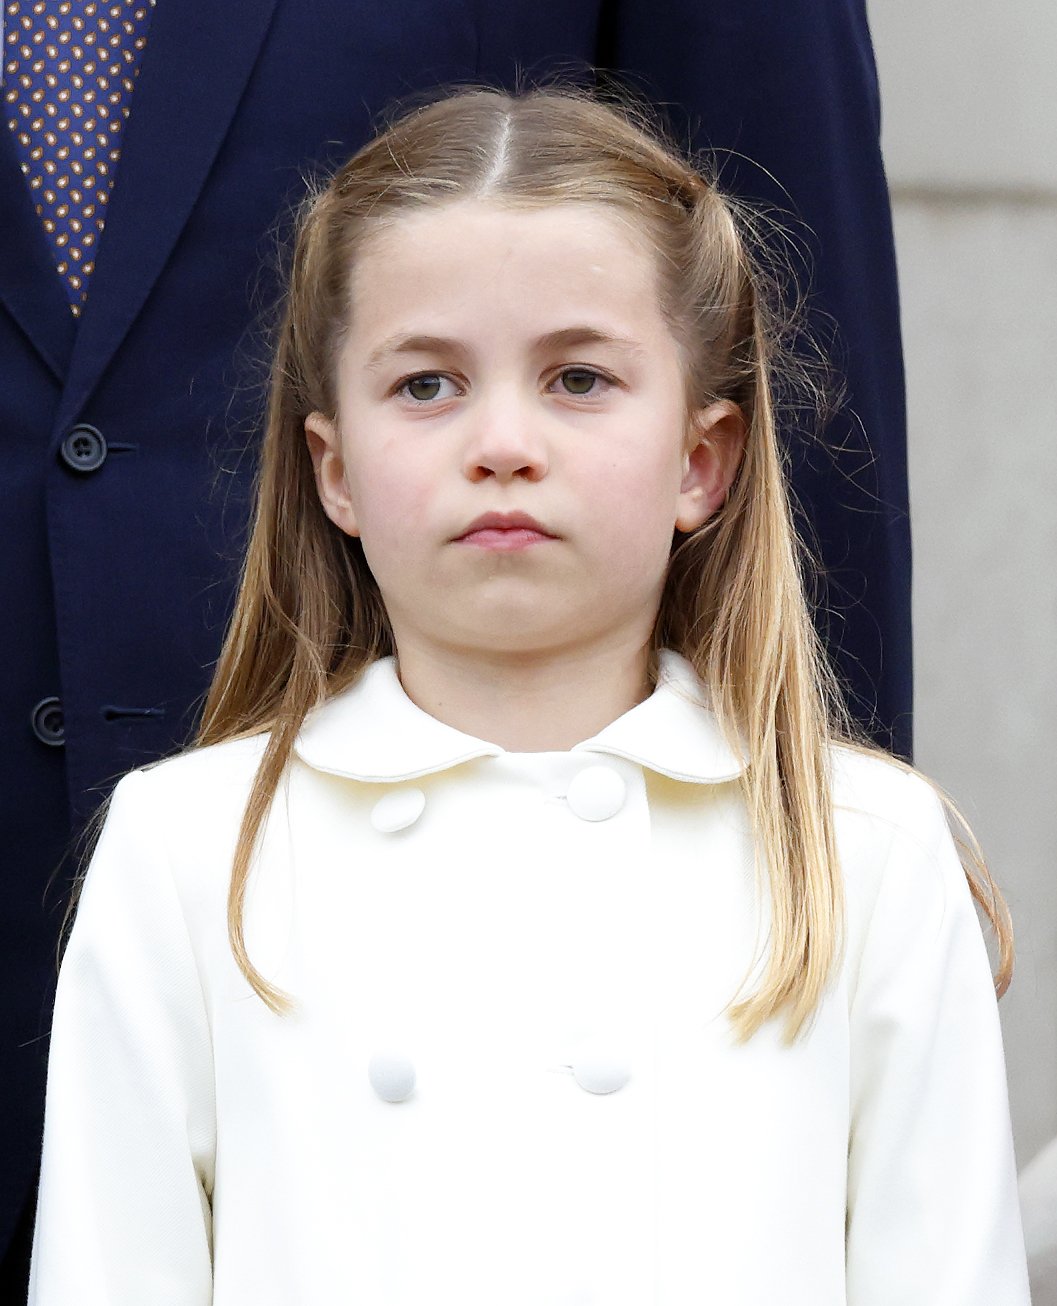 La princesa Charlotte en el balcón del Palacio de Buckingham después del concurso de platino el 5 de junio de 2022 en Londres, Inglaterra. | Foto: Getty Images